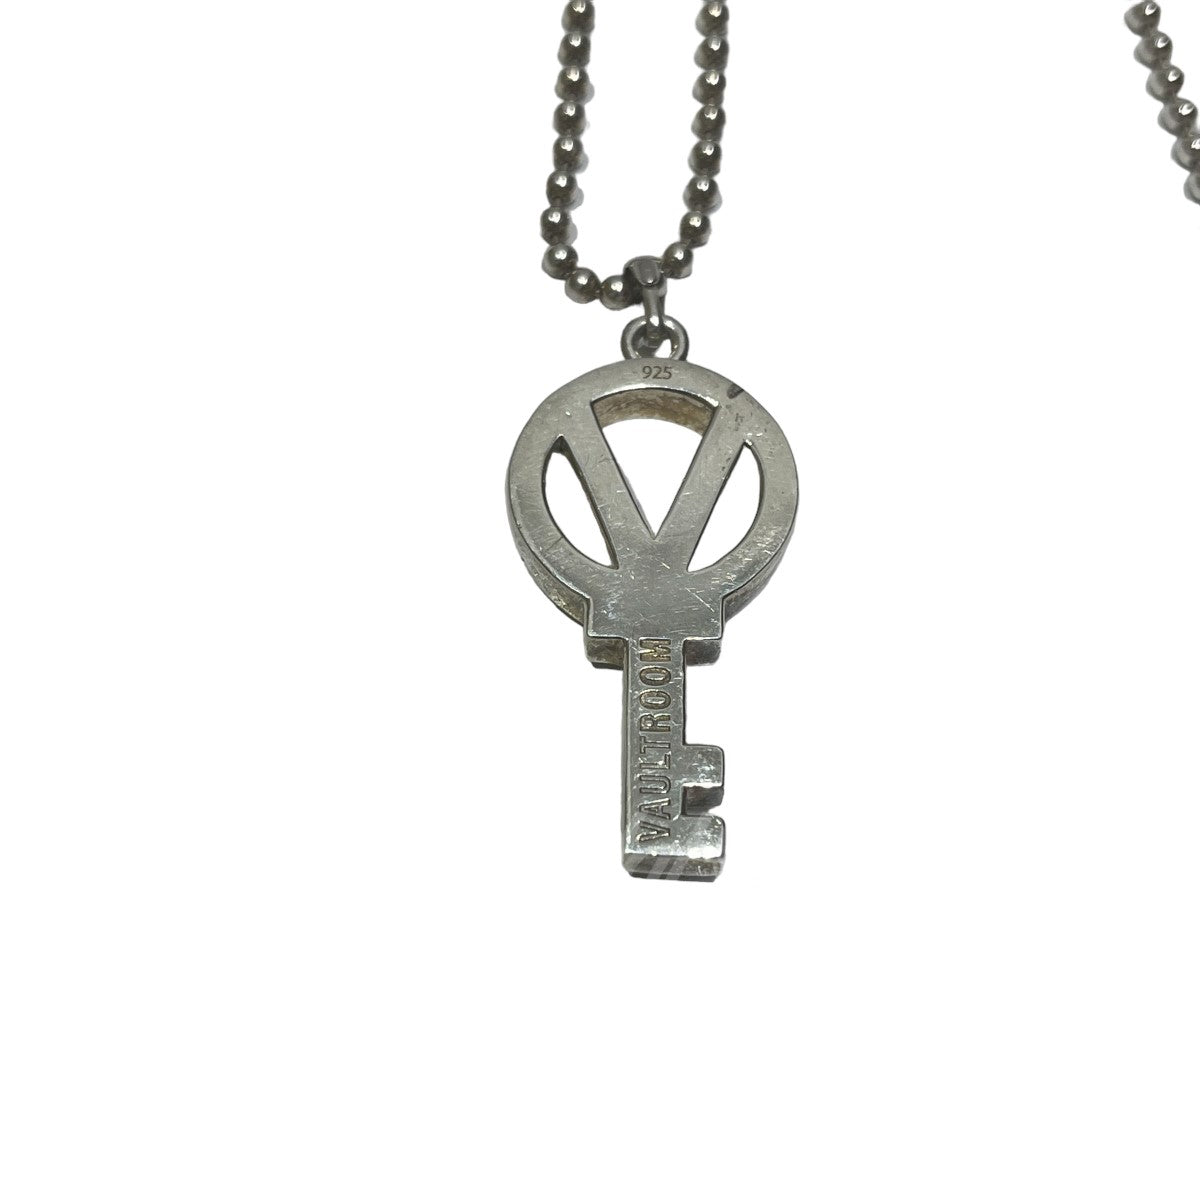 超激得SALEvaultroom key necklace “V” ネックレス アクセサリー